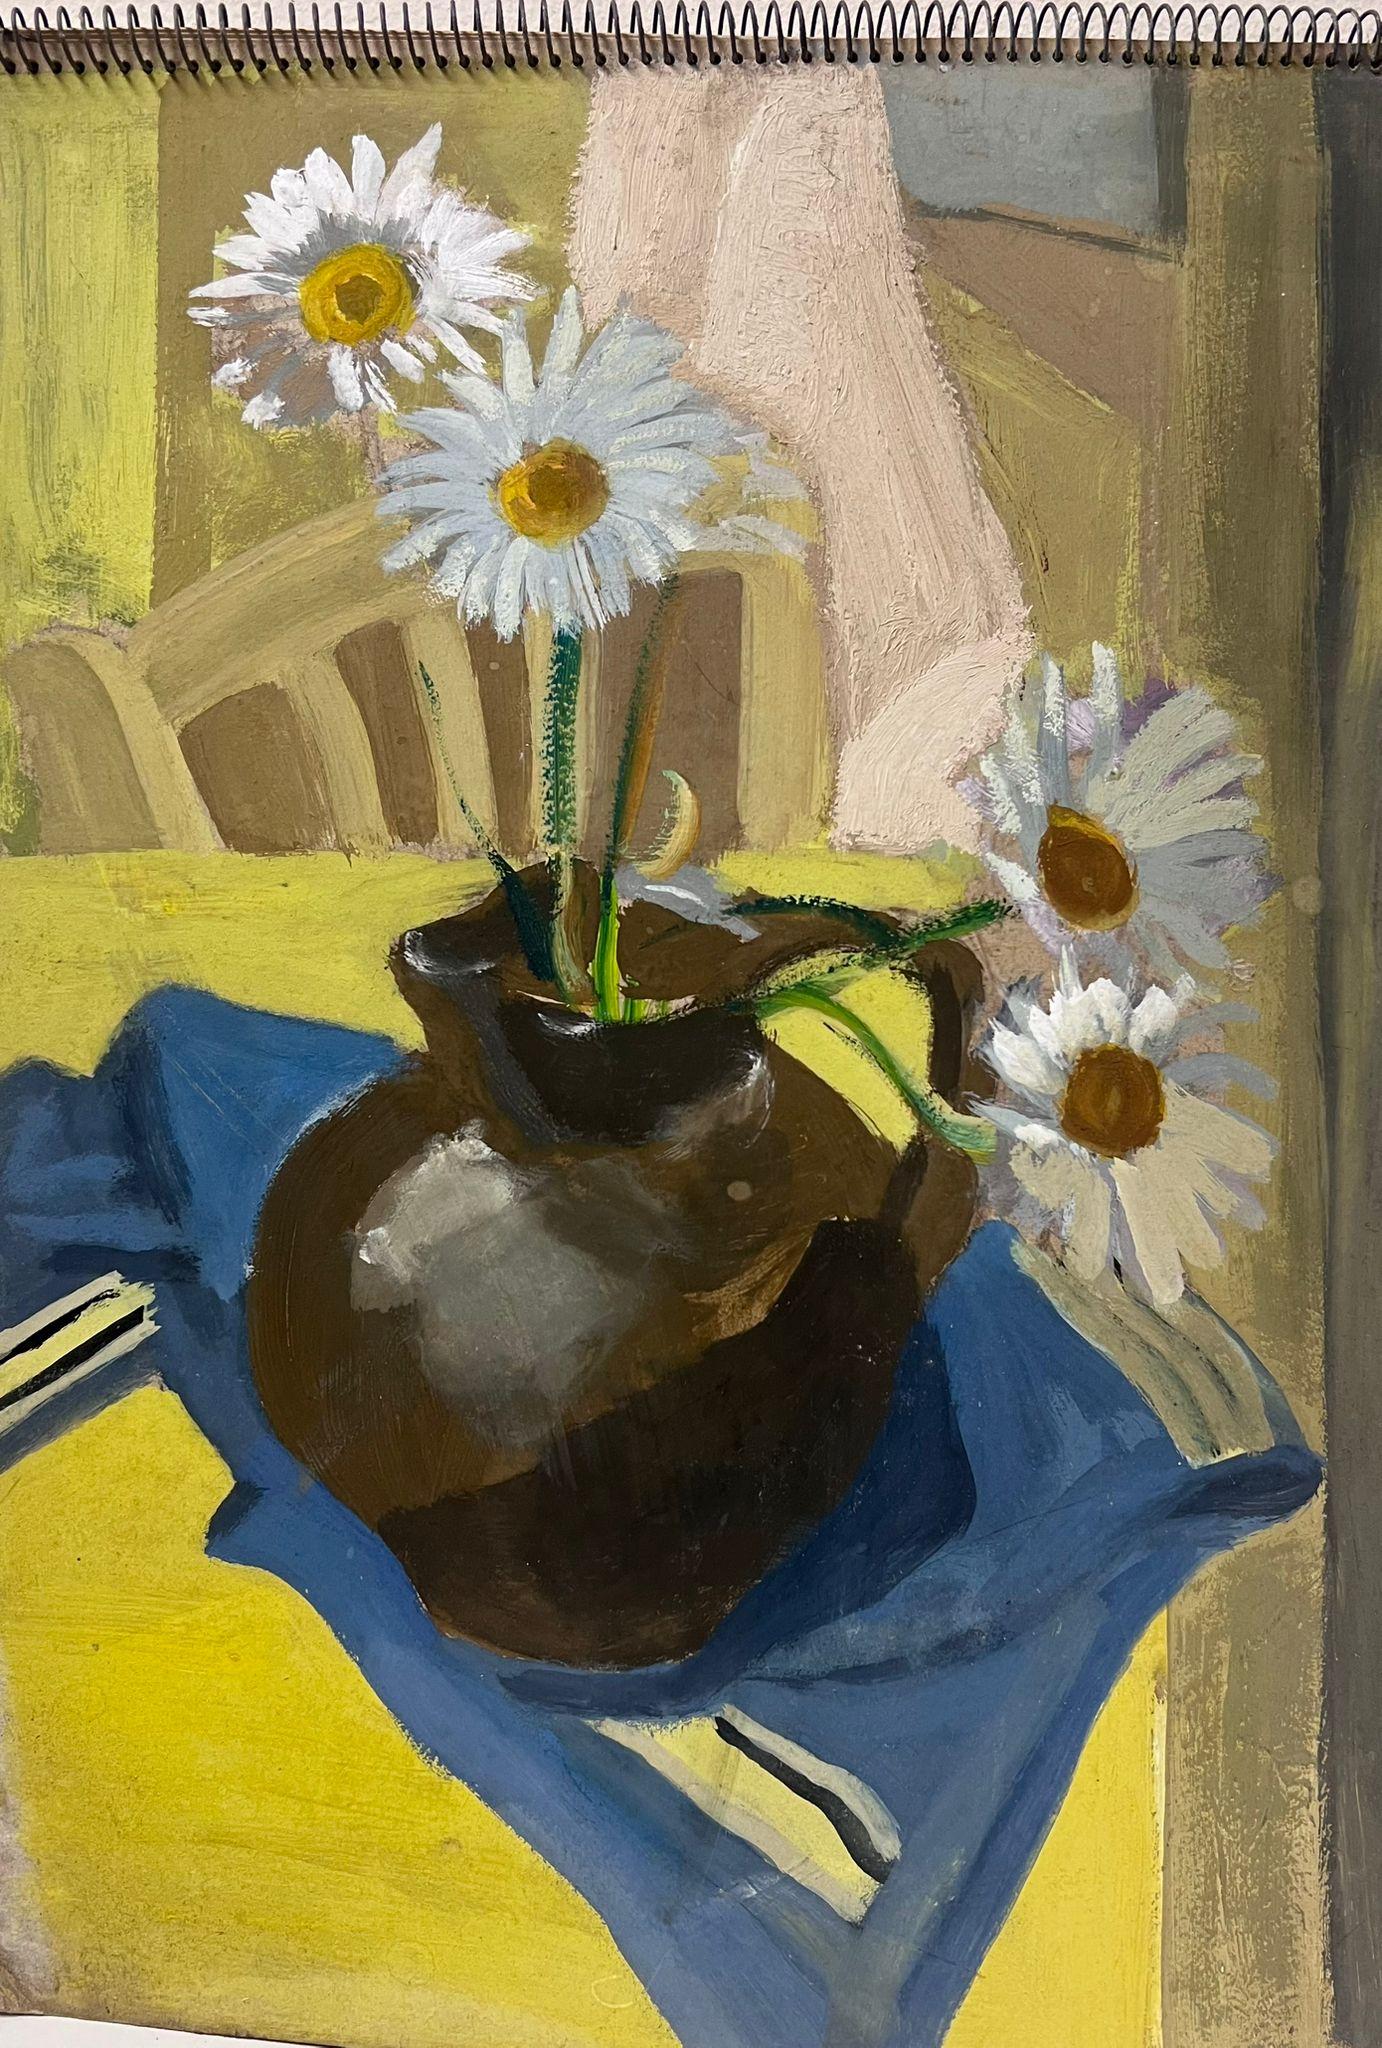 1930er Jahre Französisch Impressionist Gänseblümchen in Brown Vase auf gelben Tisch Interieur – Painting von Y. Blanchon